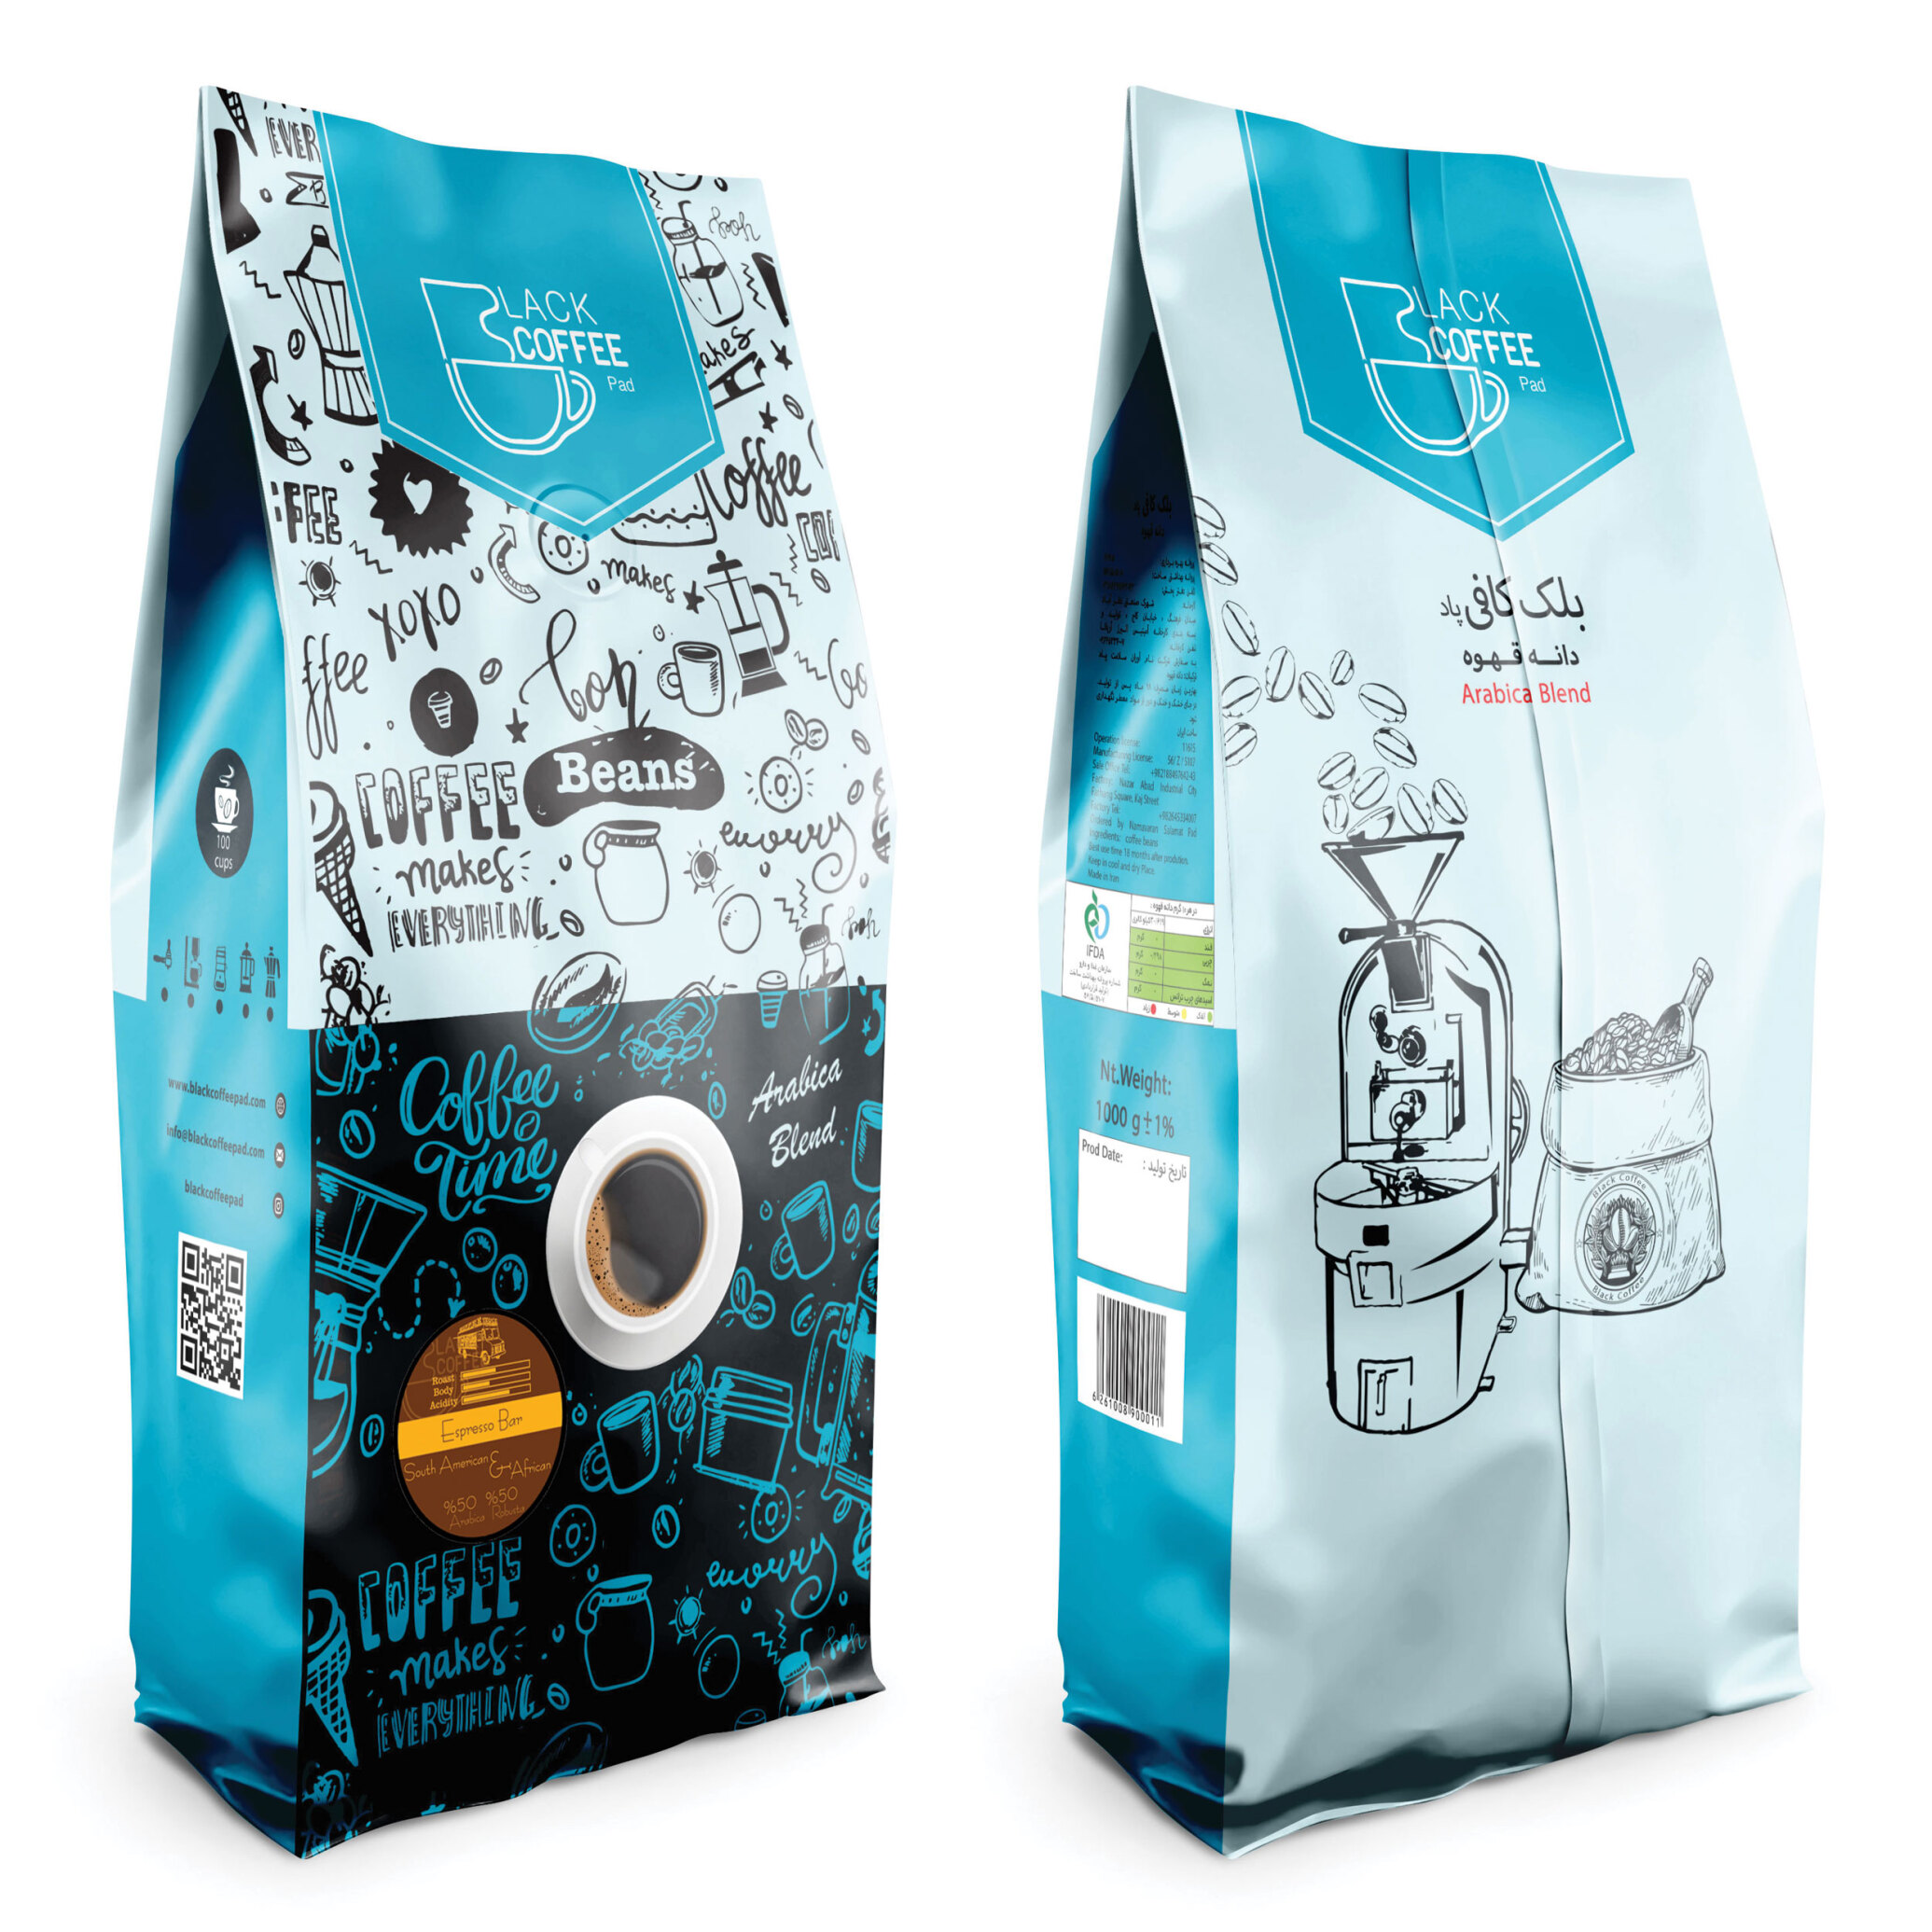  دانه قهوه اسپرسو بار | Espresso Bar Coffee Beans - کیلوگرم ۱ | بلک کافی | فروشگاه محصولات قهوه و دانه قهوه 